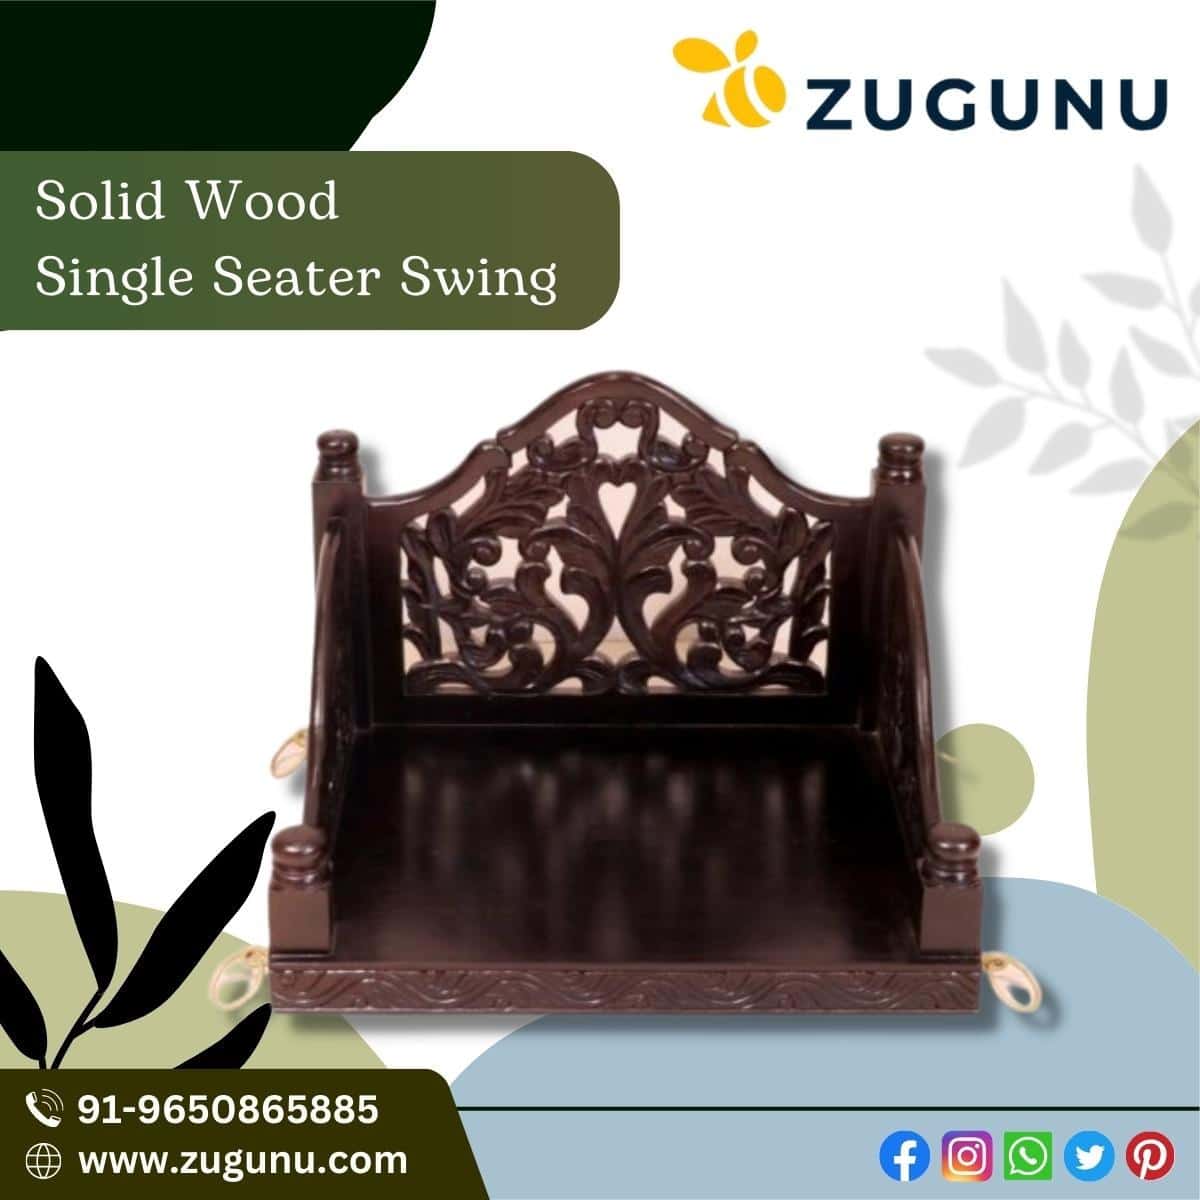 Solid Wood Single Seater Swing Swing In Style Zugunu